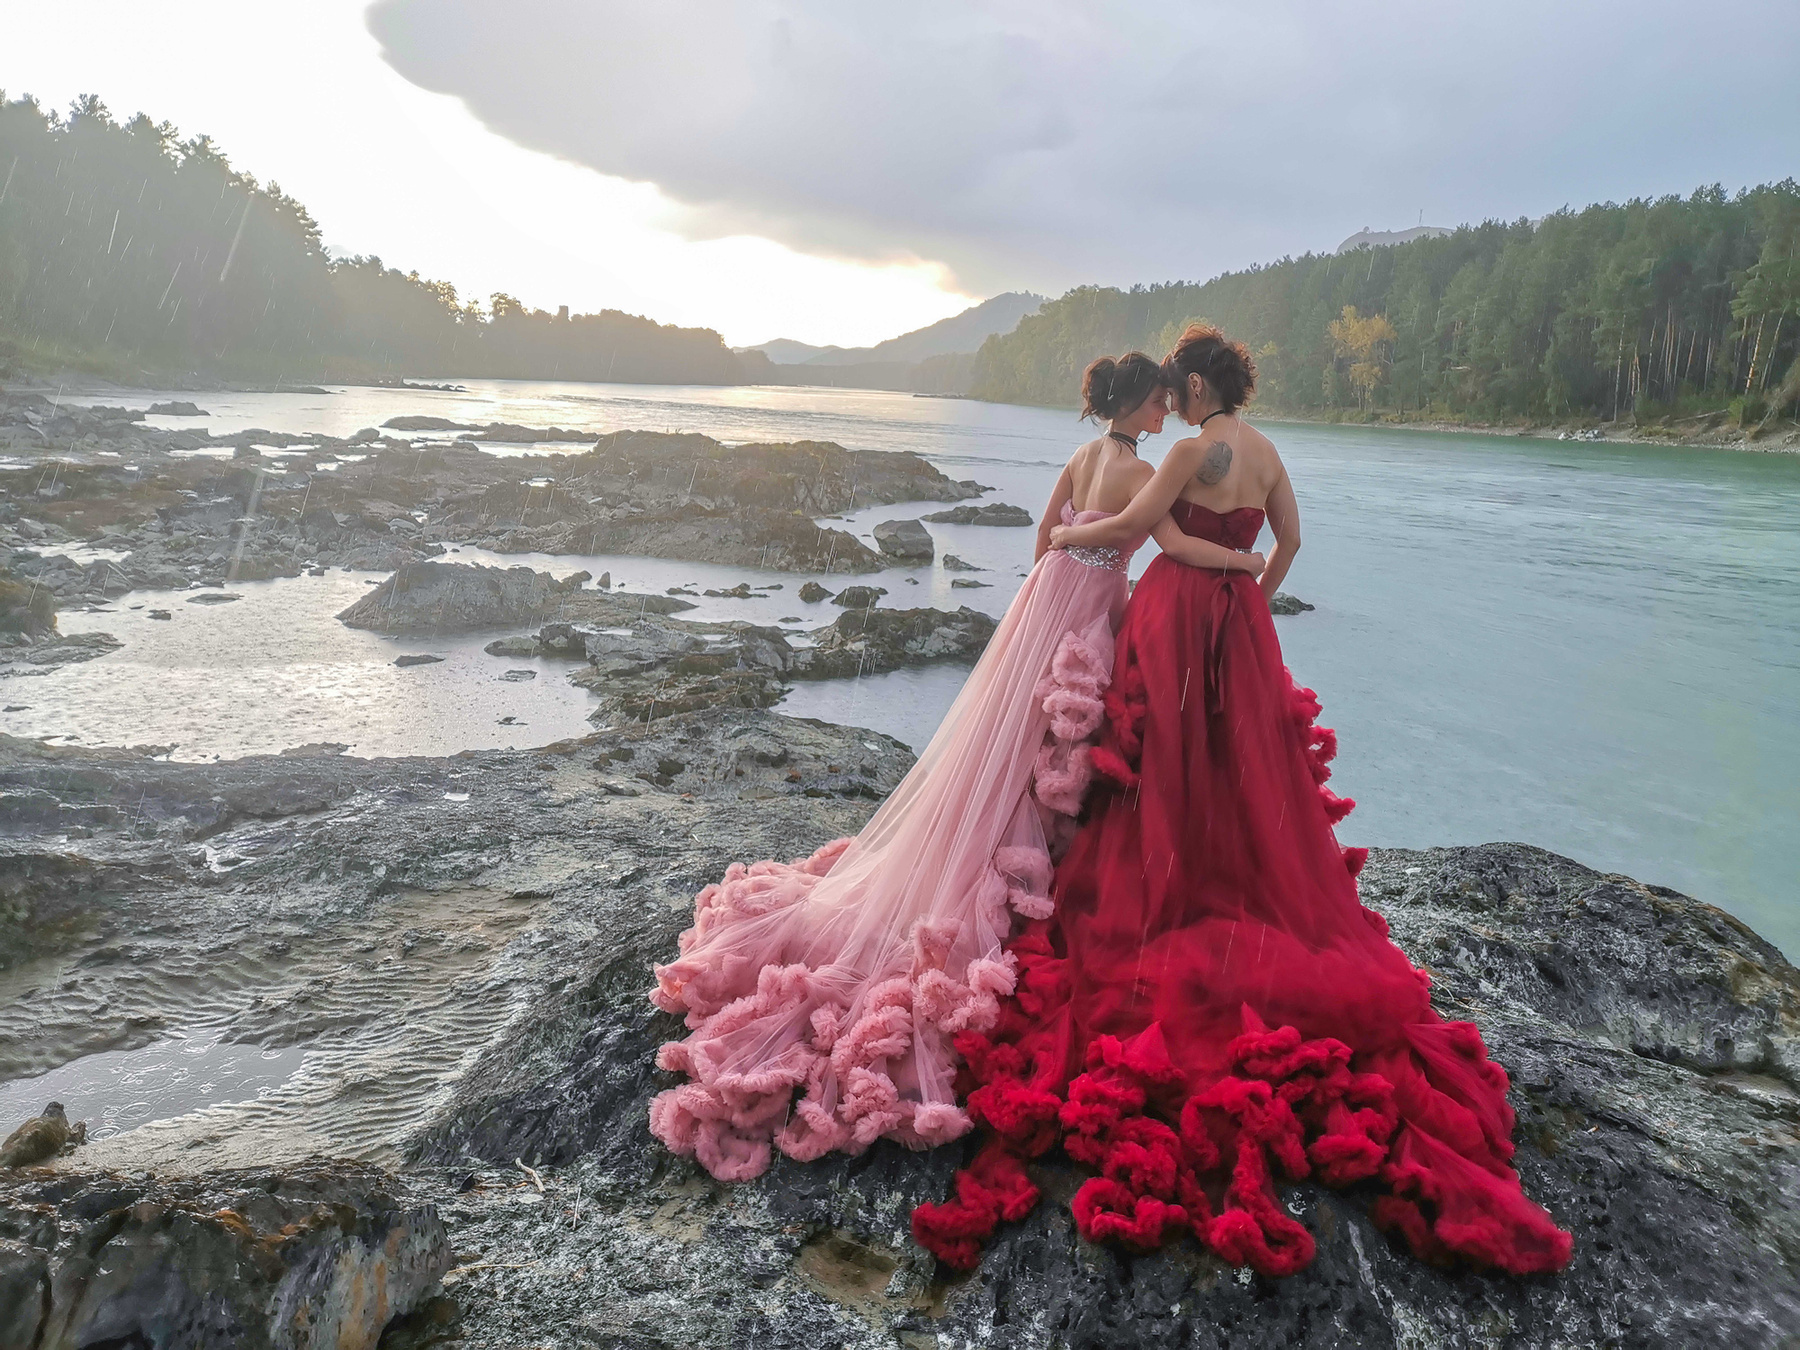 На берегу fotomzk платья красное розовое девушки природа река Алтай